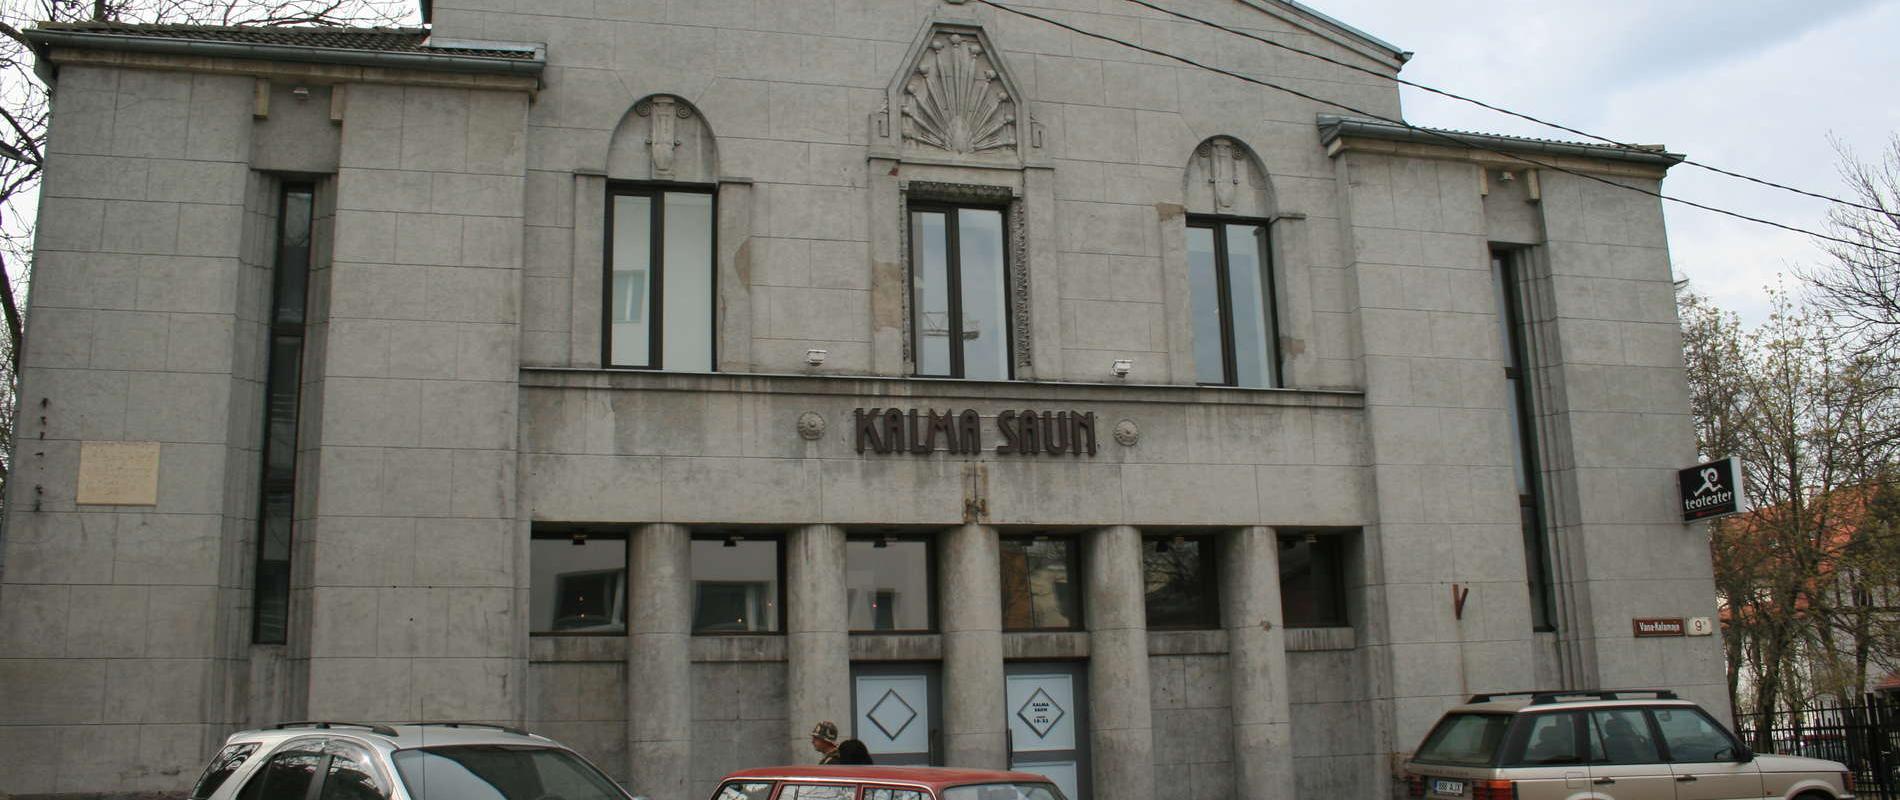 Kalma sauna in Tallinn